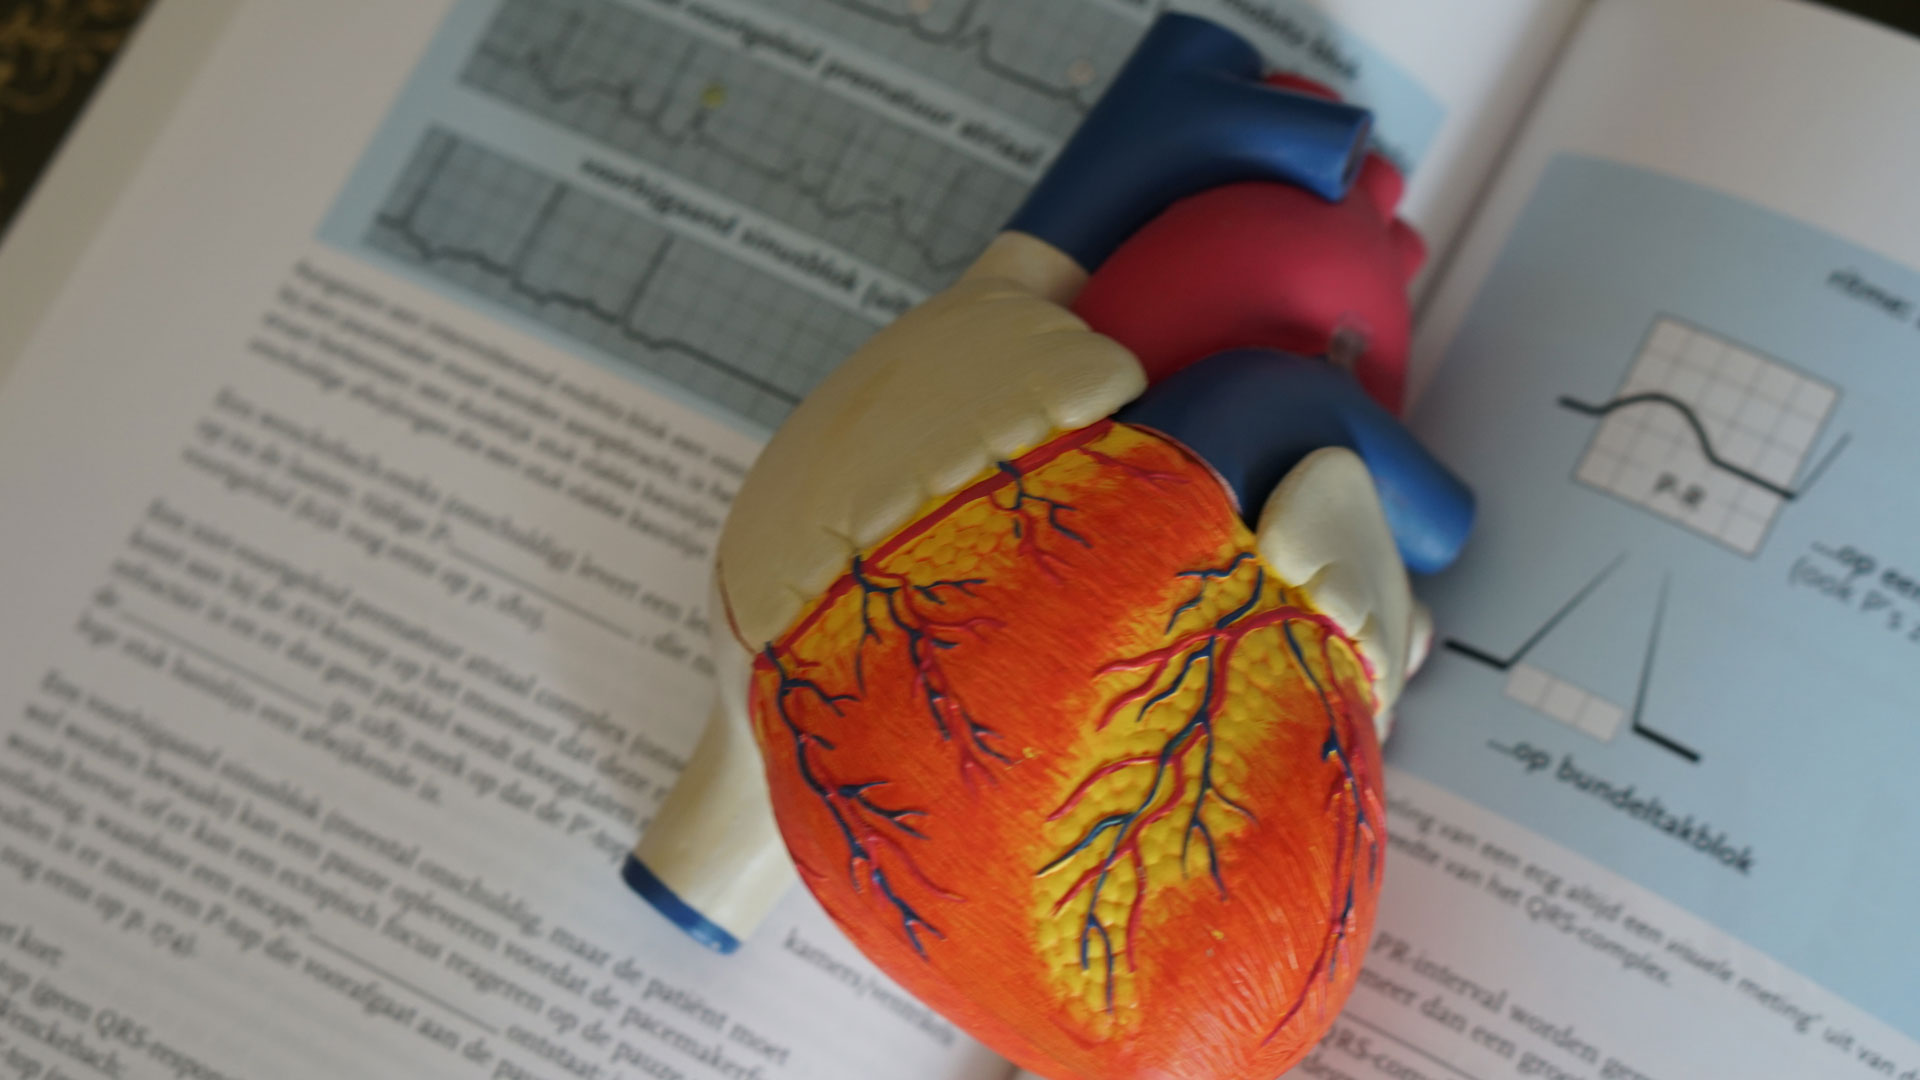 heart-valve-related-deaths-hidden